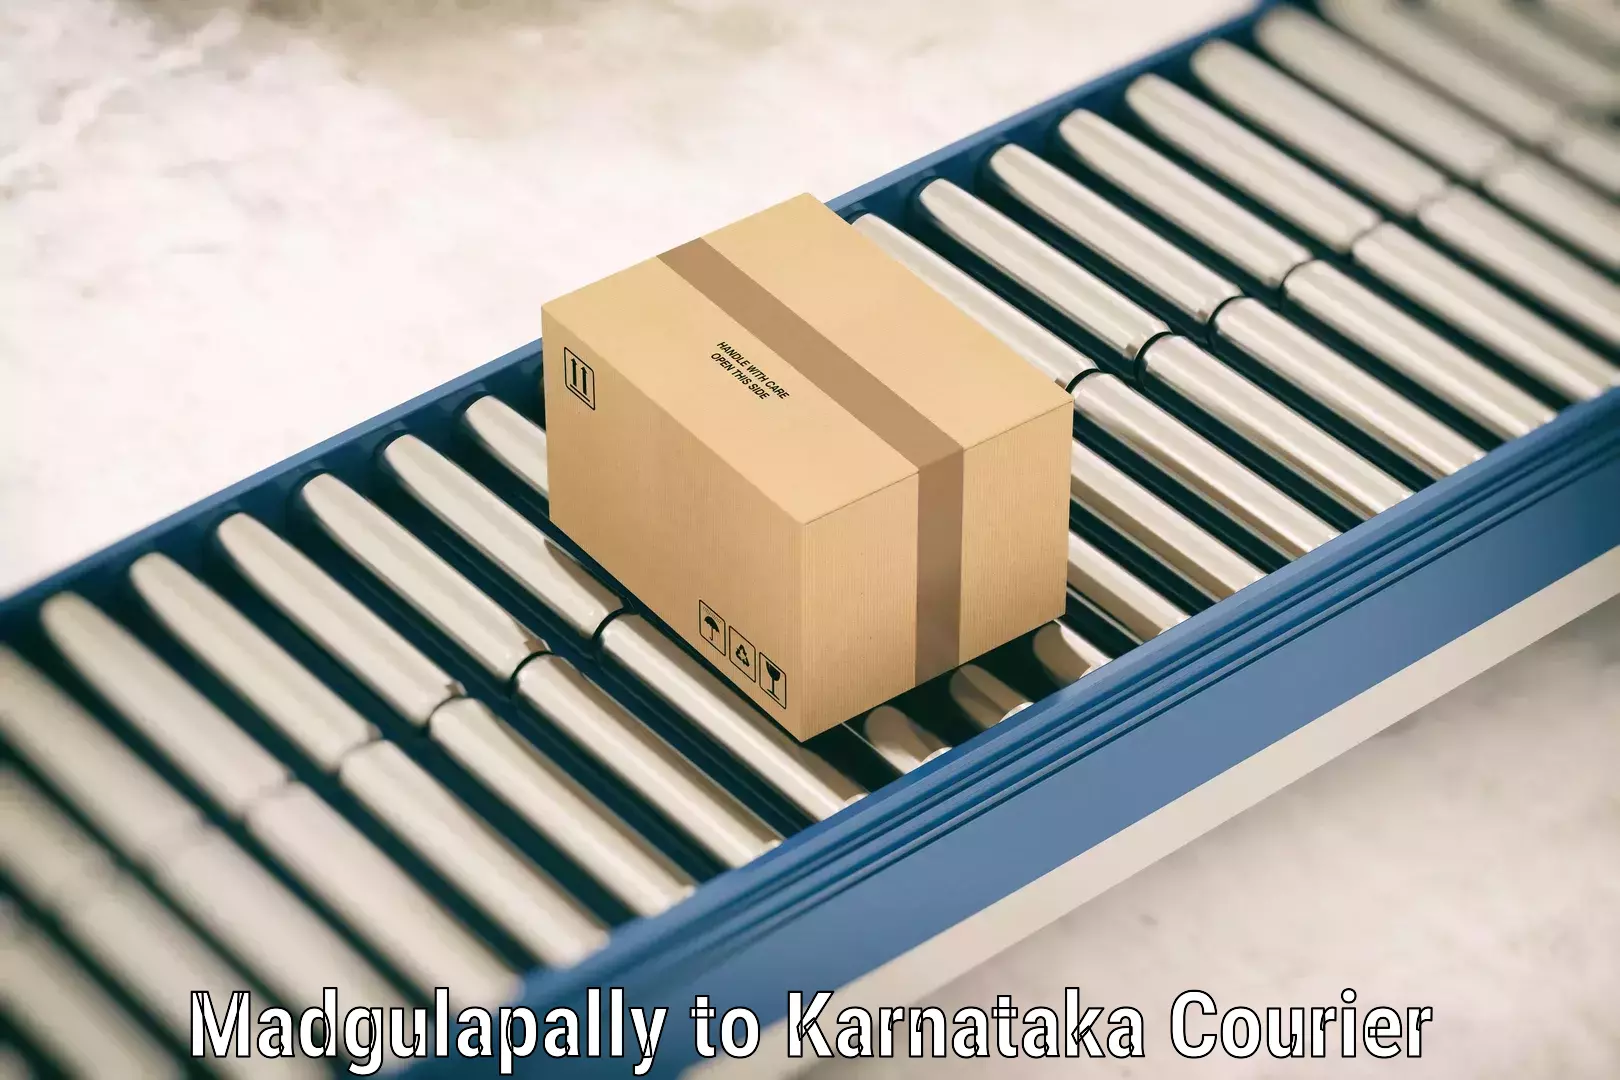 Baggage transport scheduler Madgulapally to Karnataka